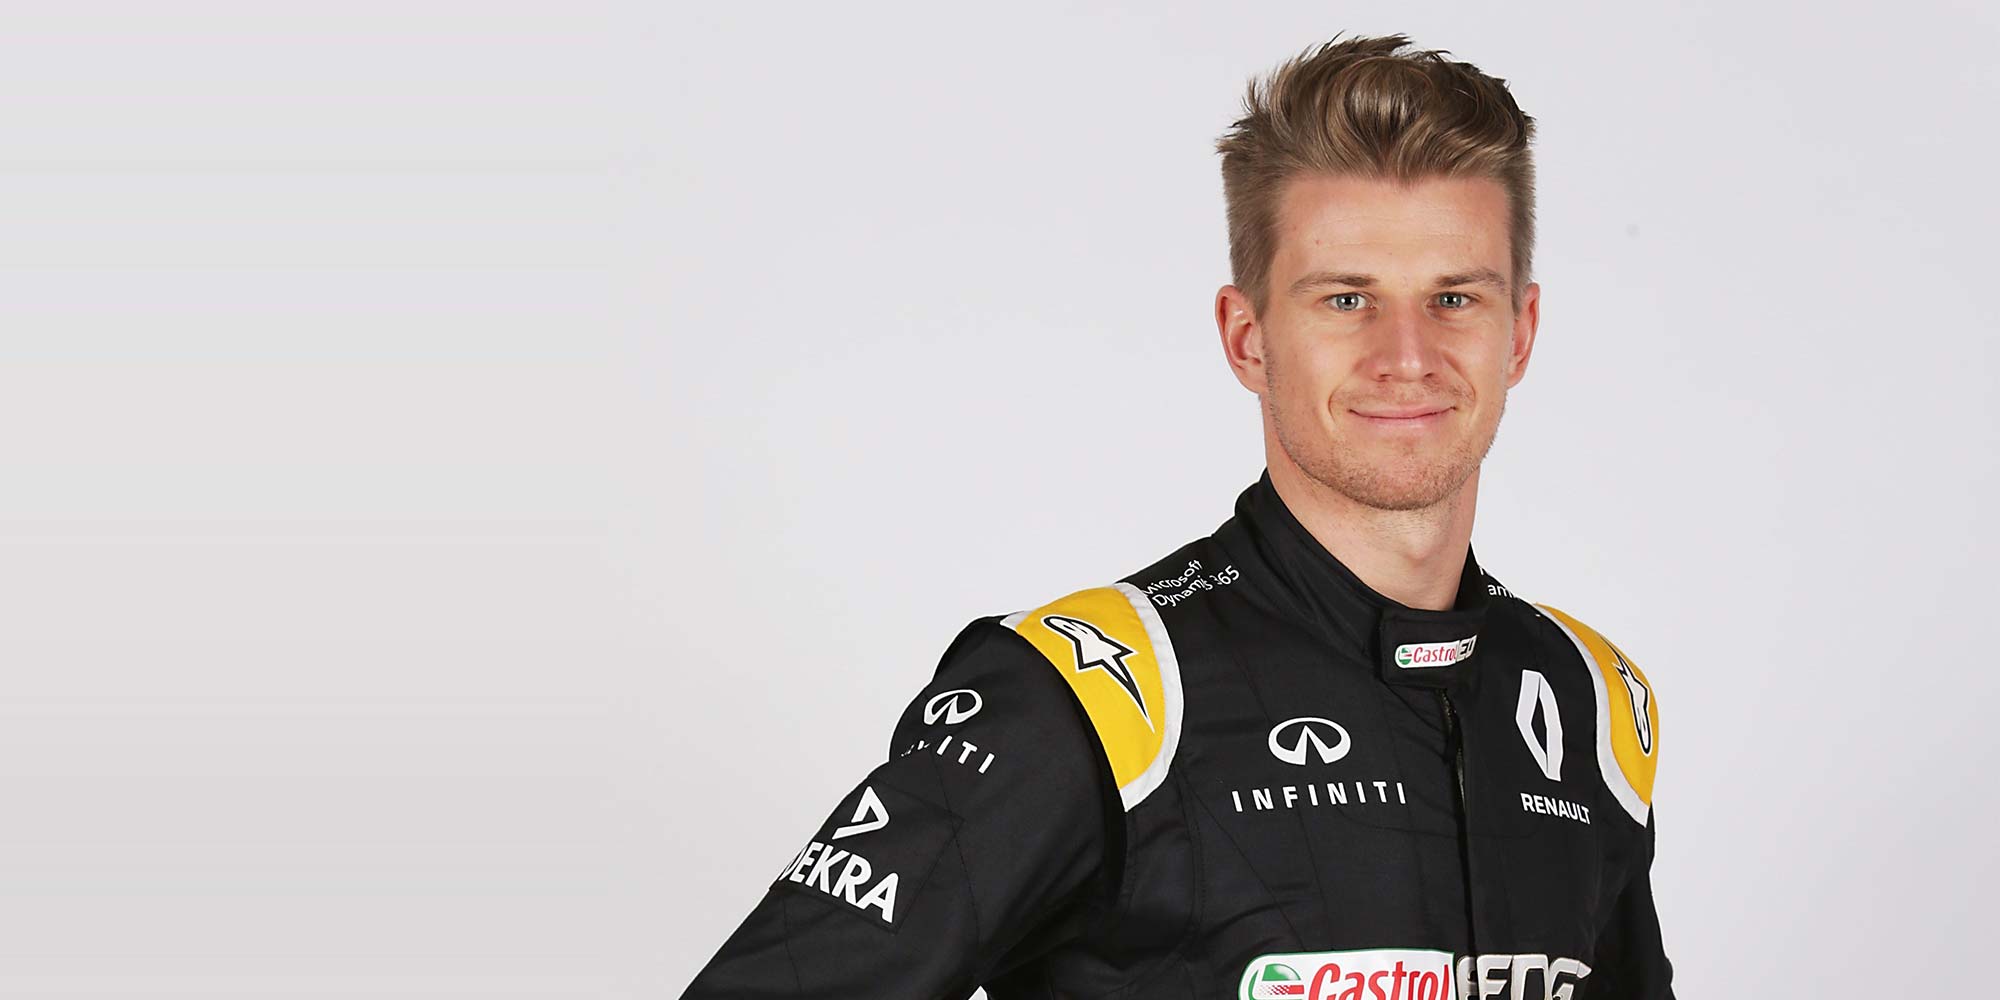 Deutscher Hoffnungsträger im Formel 1-Renault